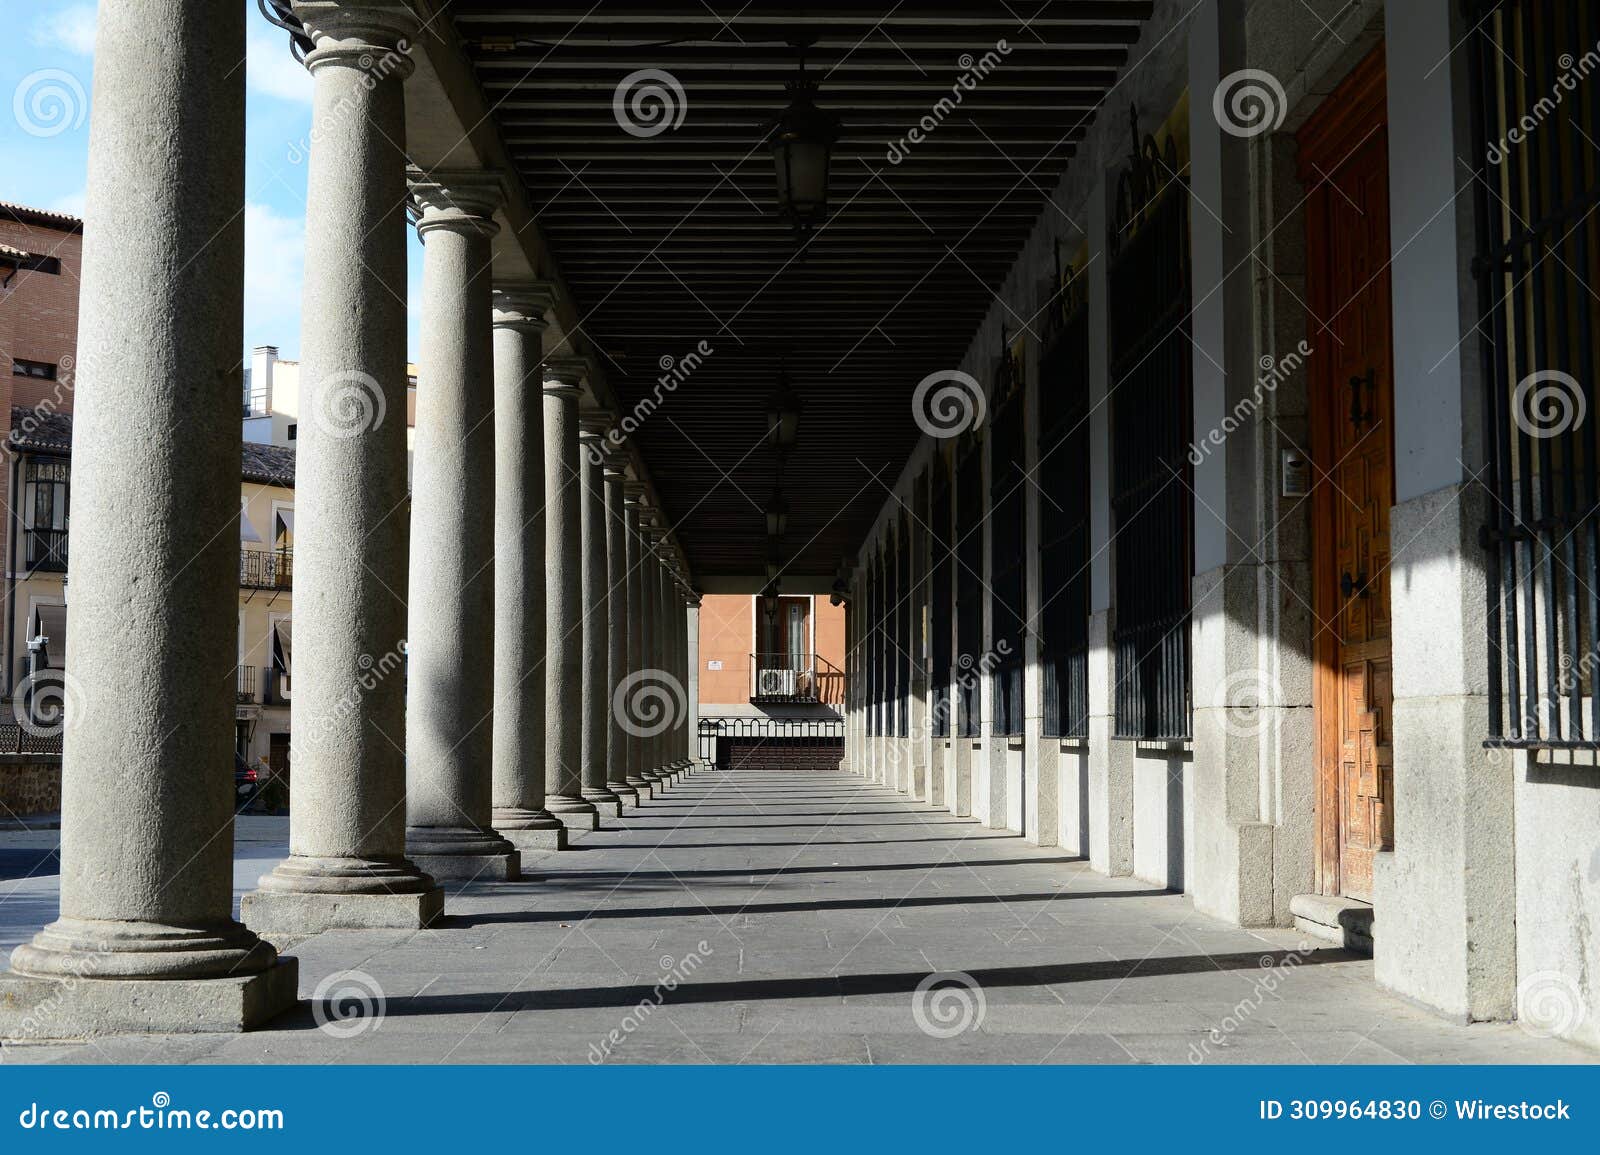 arcades and columns in the plaza de zocodover in toledo, spain.